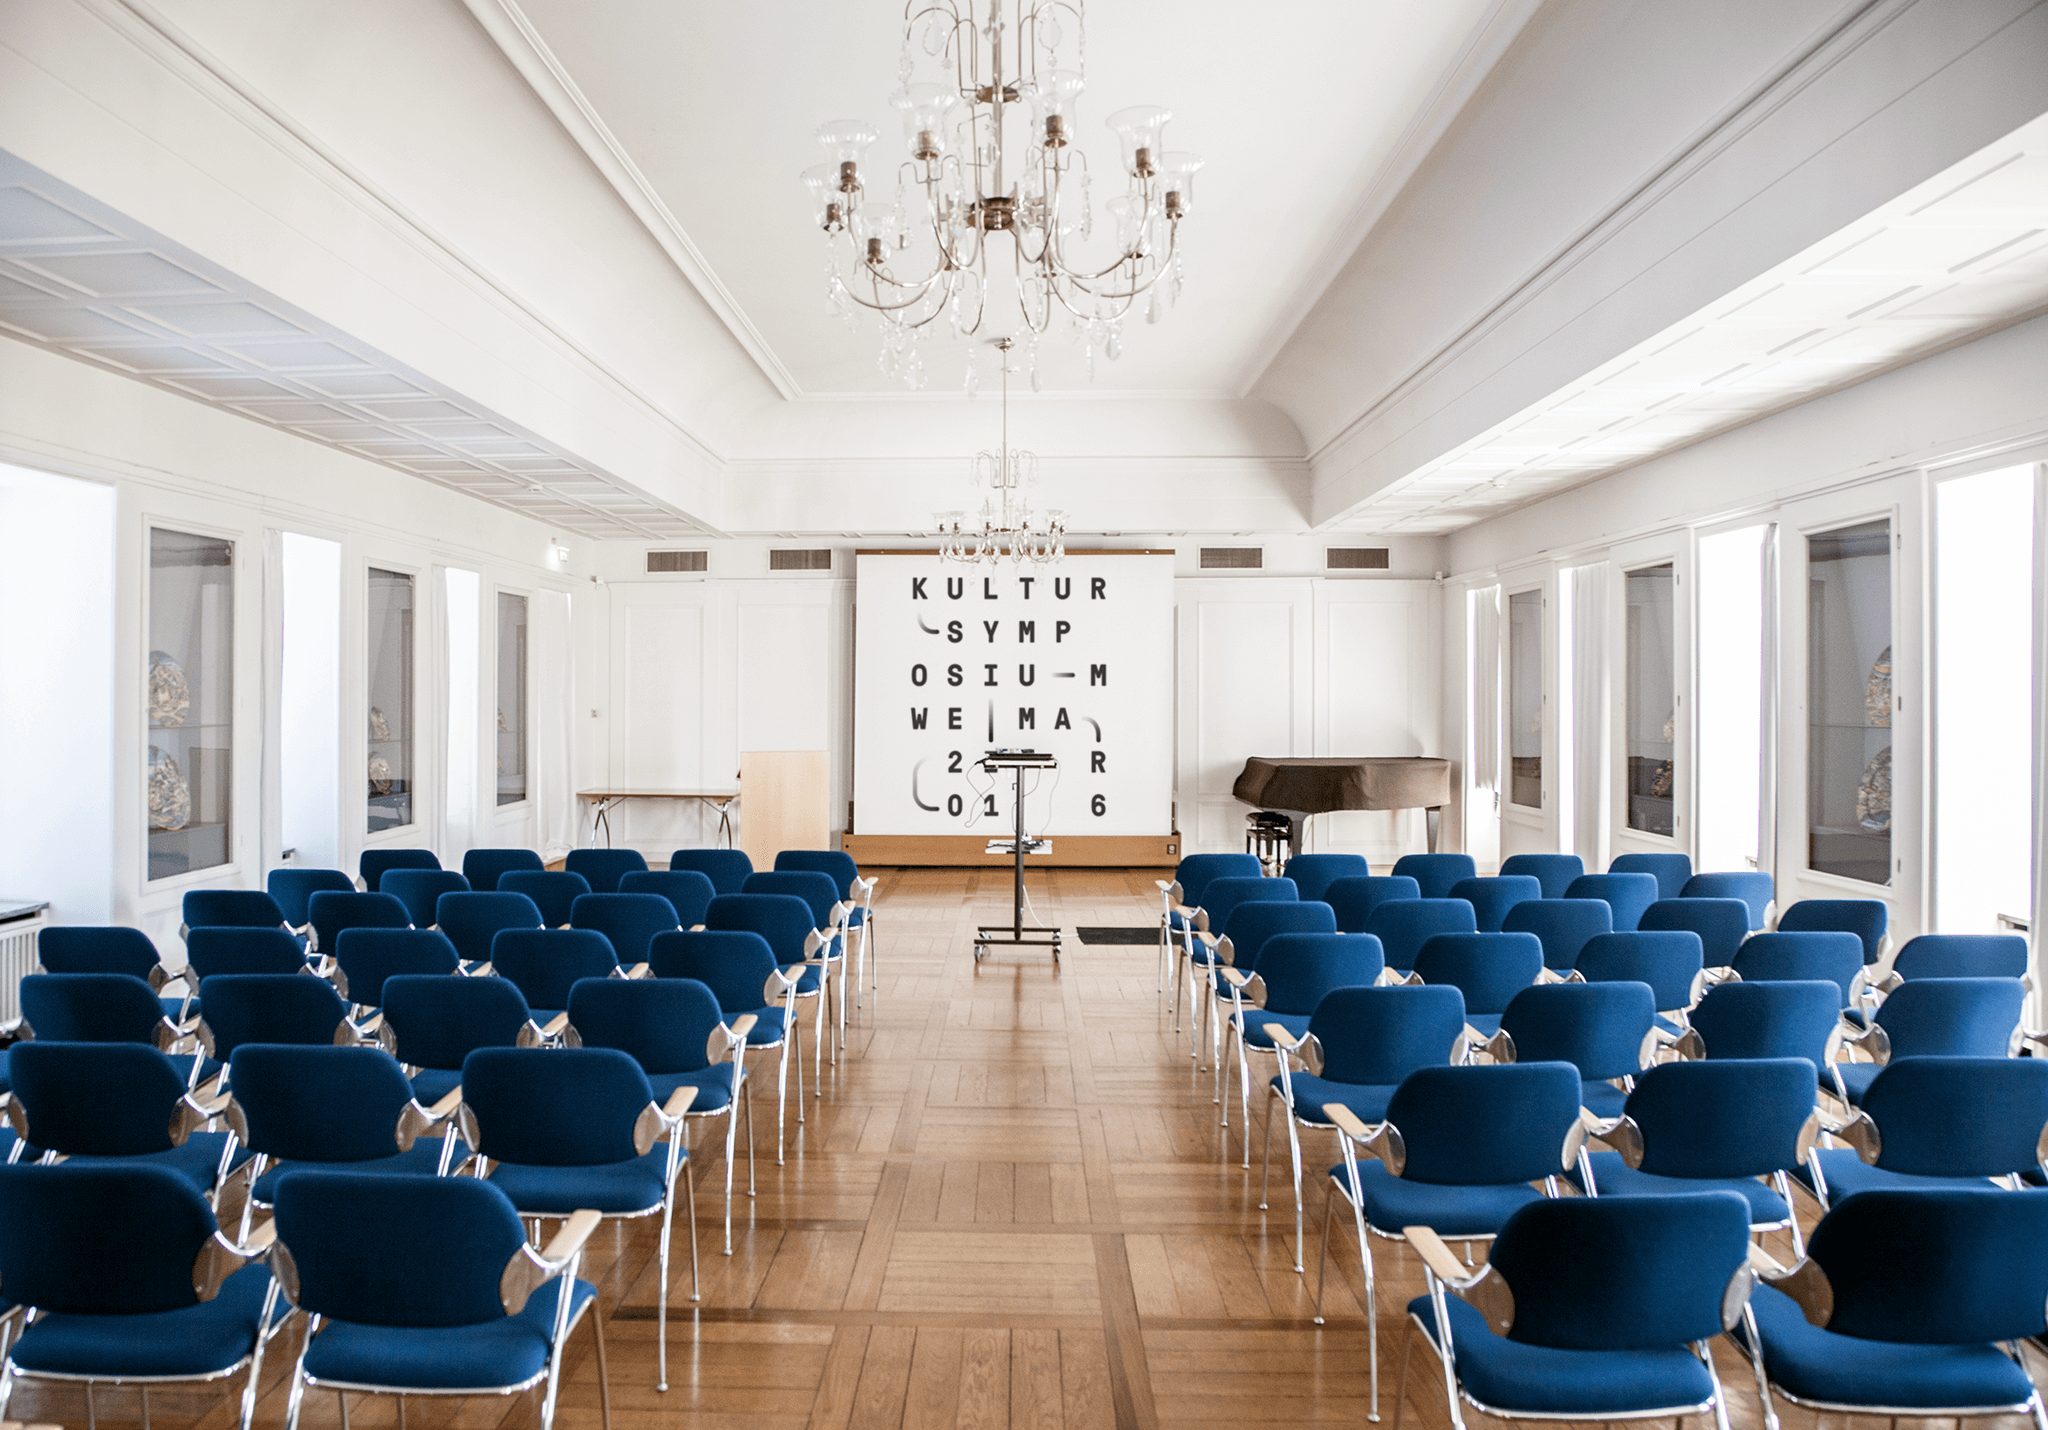 Leerer Konferenzraum mit blauen Stühlen und grafischem Keyvisual / Empty conference room with blue chairs and graphic key visual